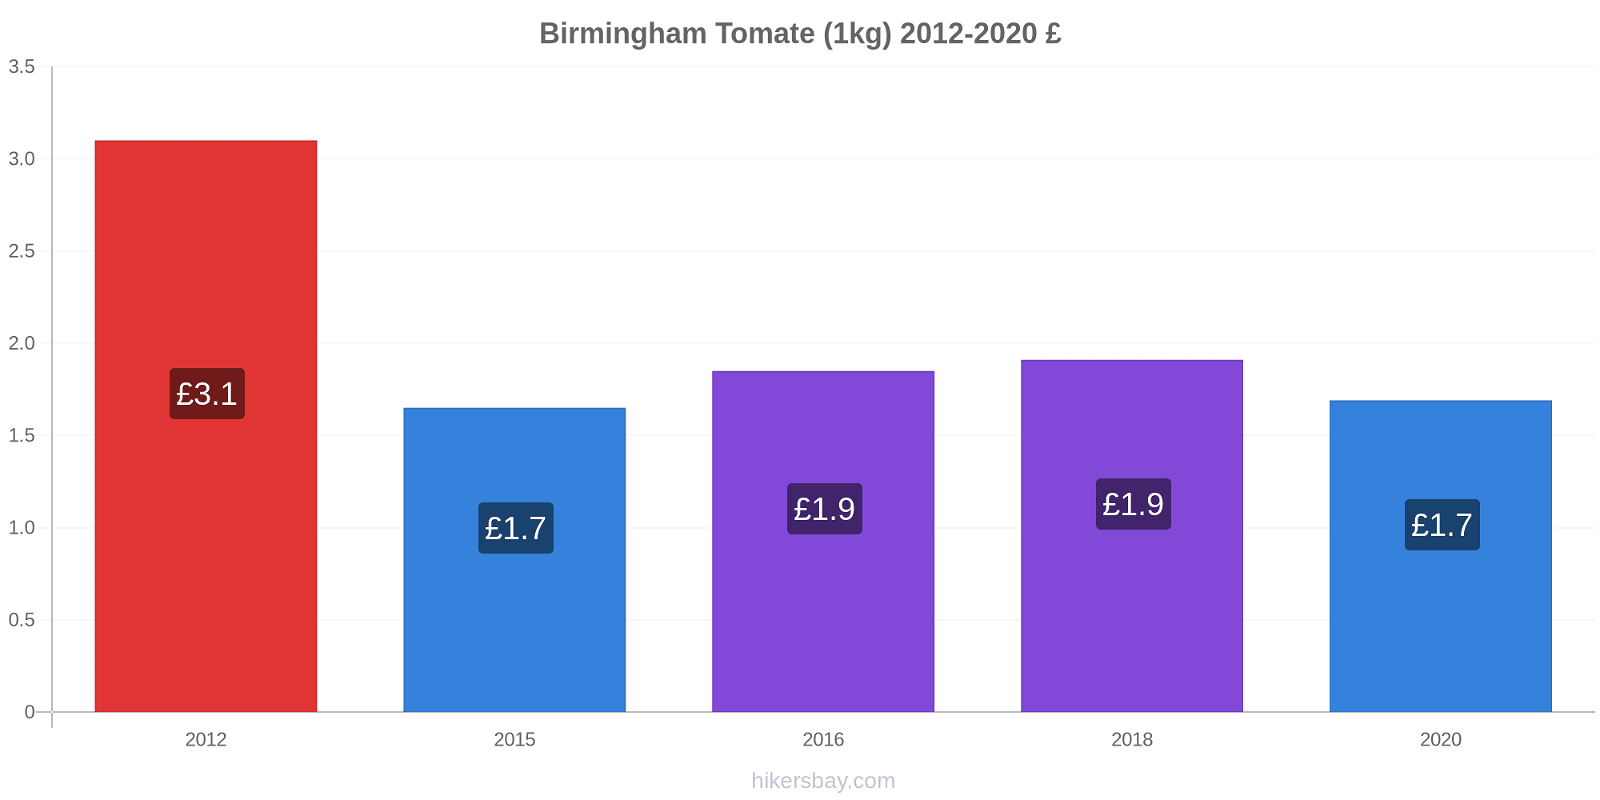 Birmingham cambios de precios Tomate (1kg) hikersbay.com